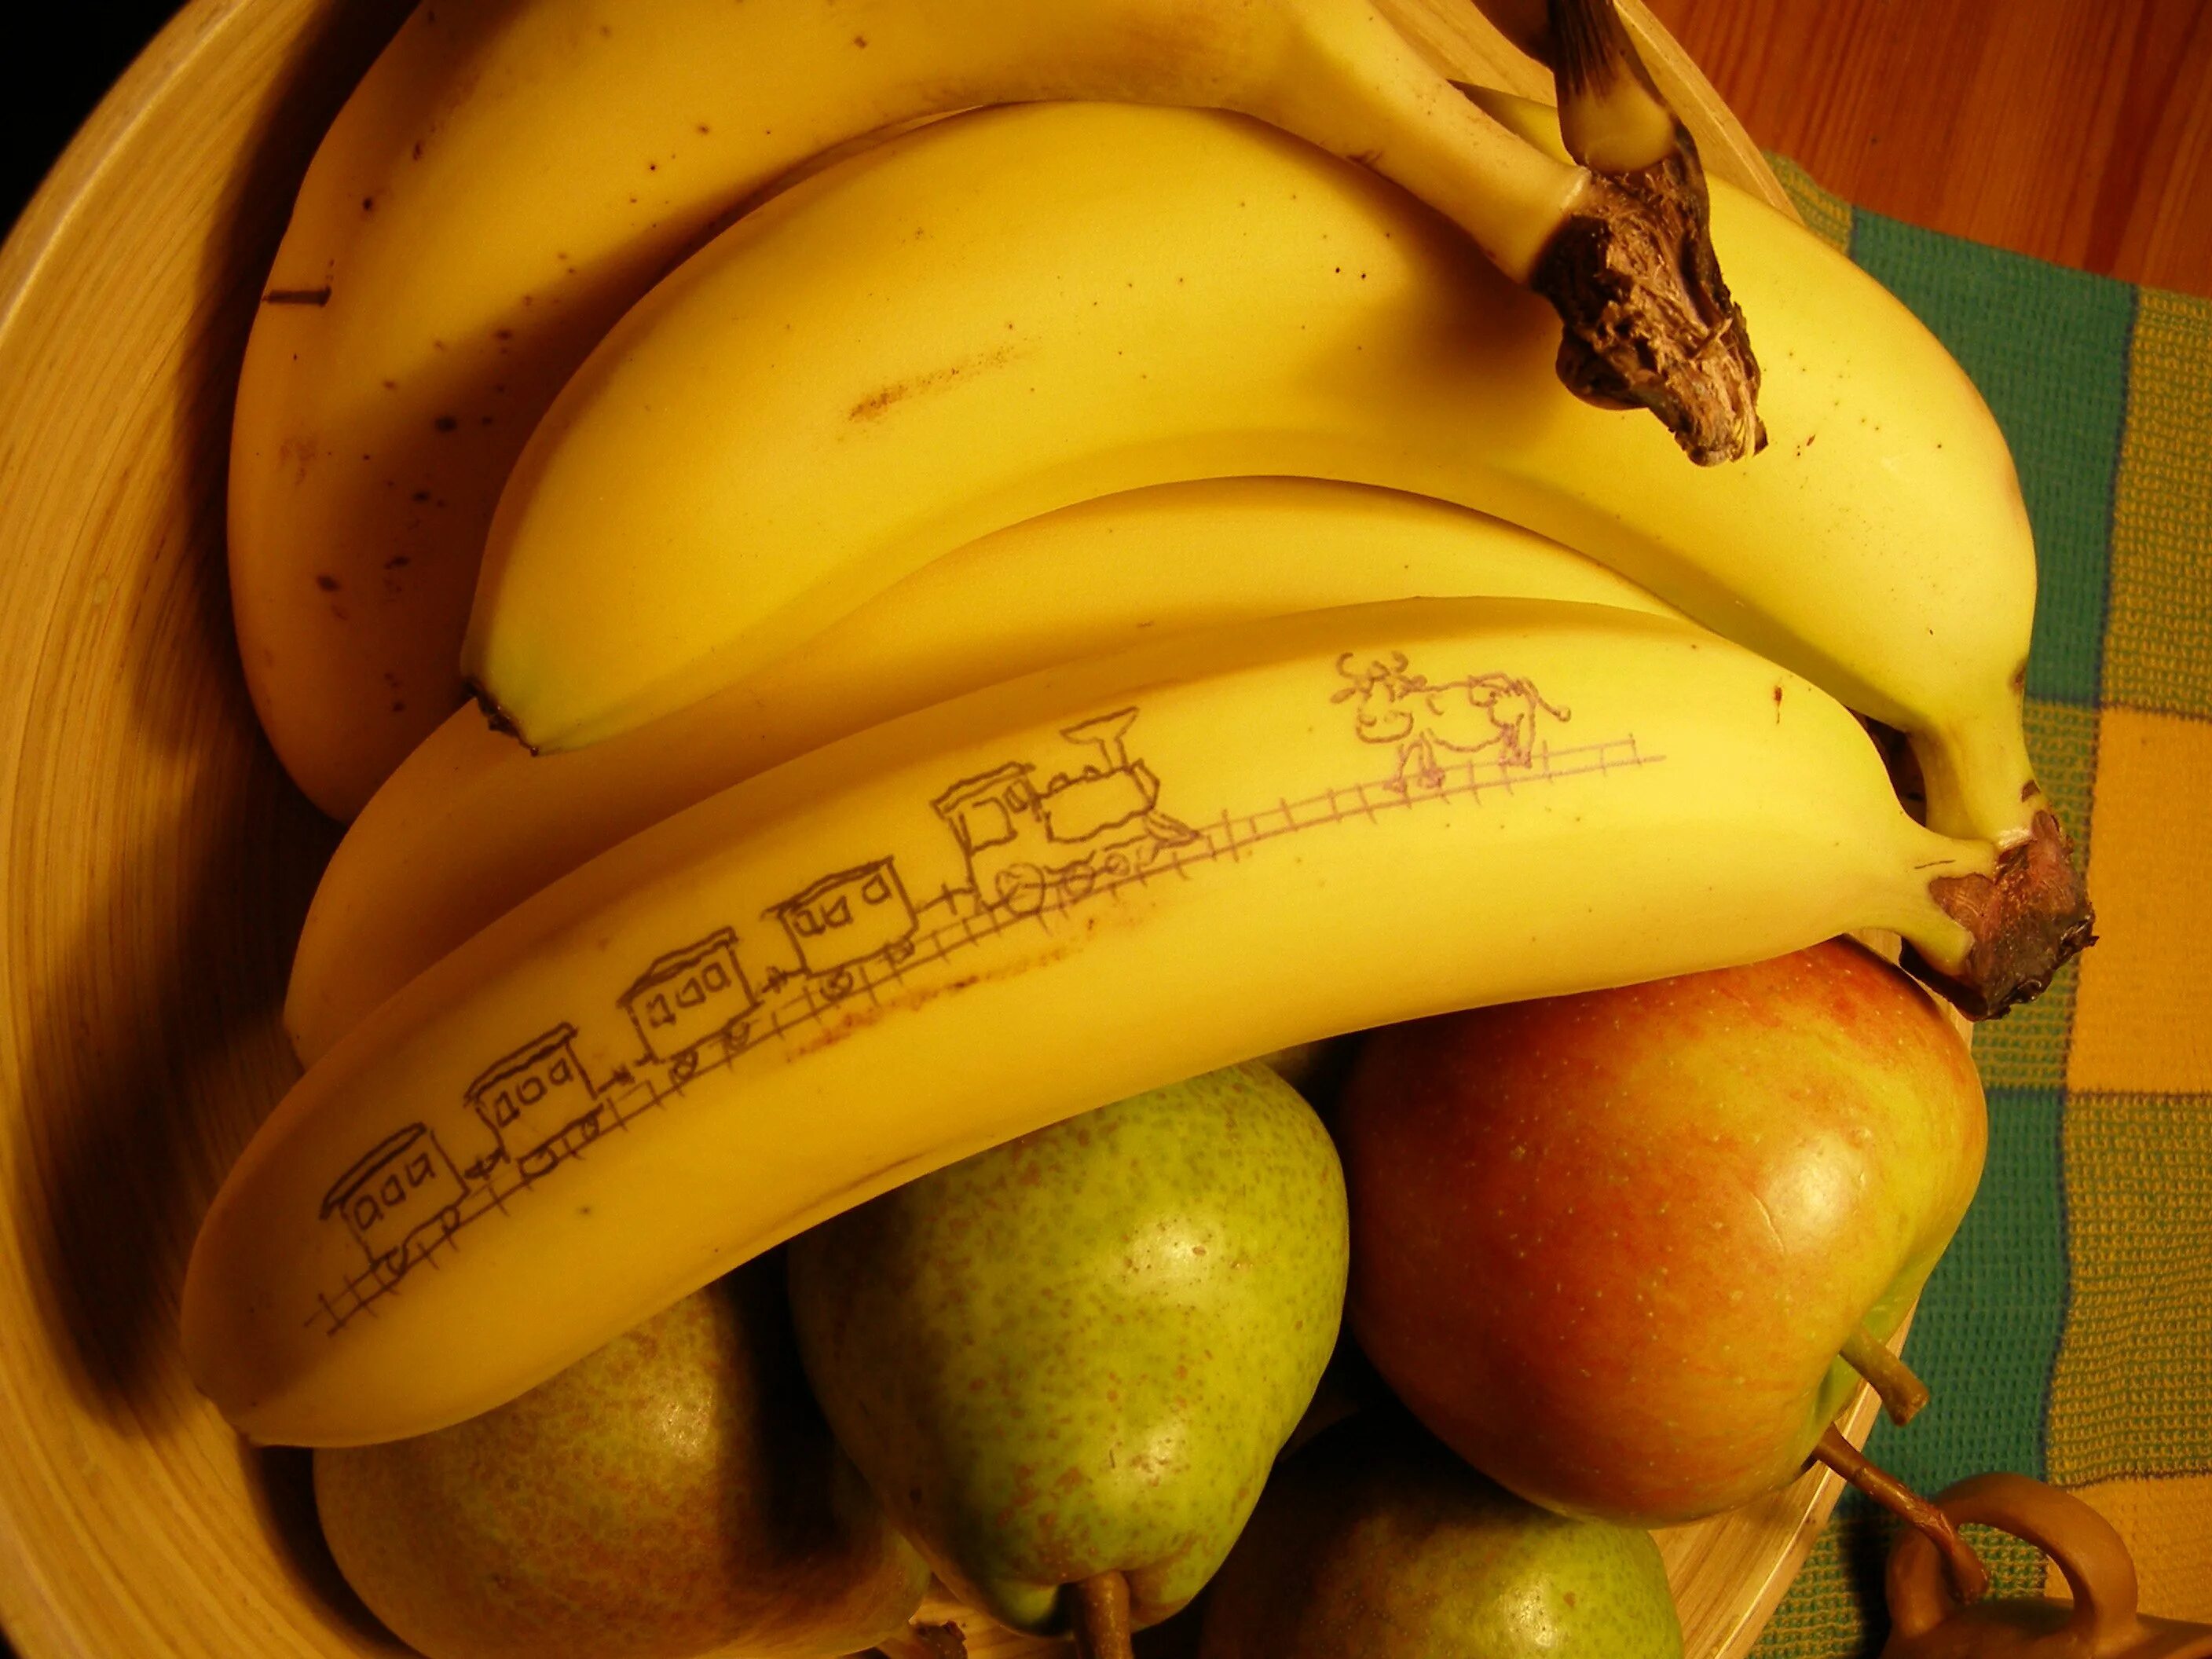 I like bananas apples. Банановые яблоки. Яблоки и бананы. Груша банановая. Банан но груша.